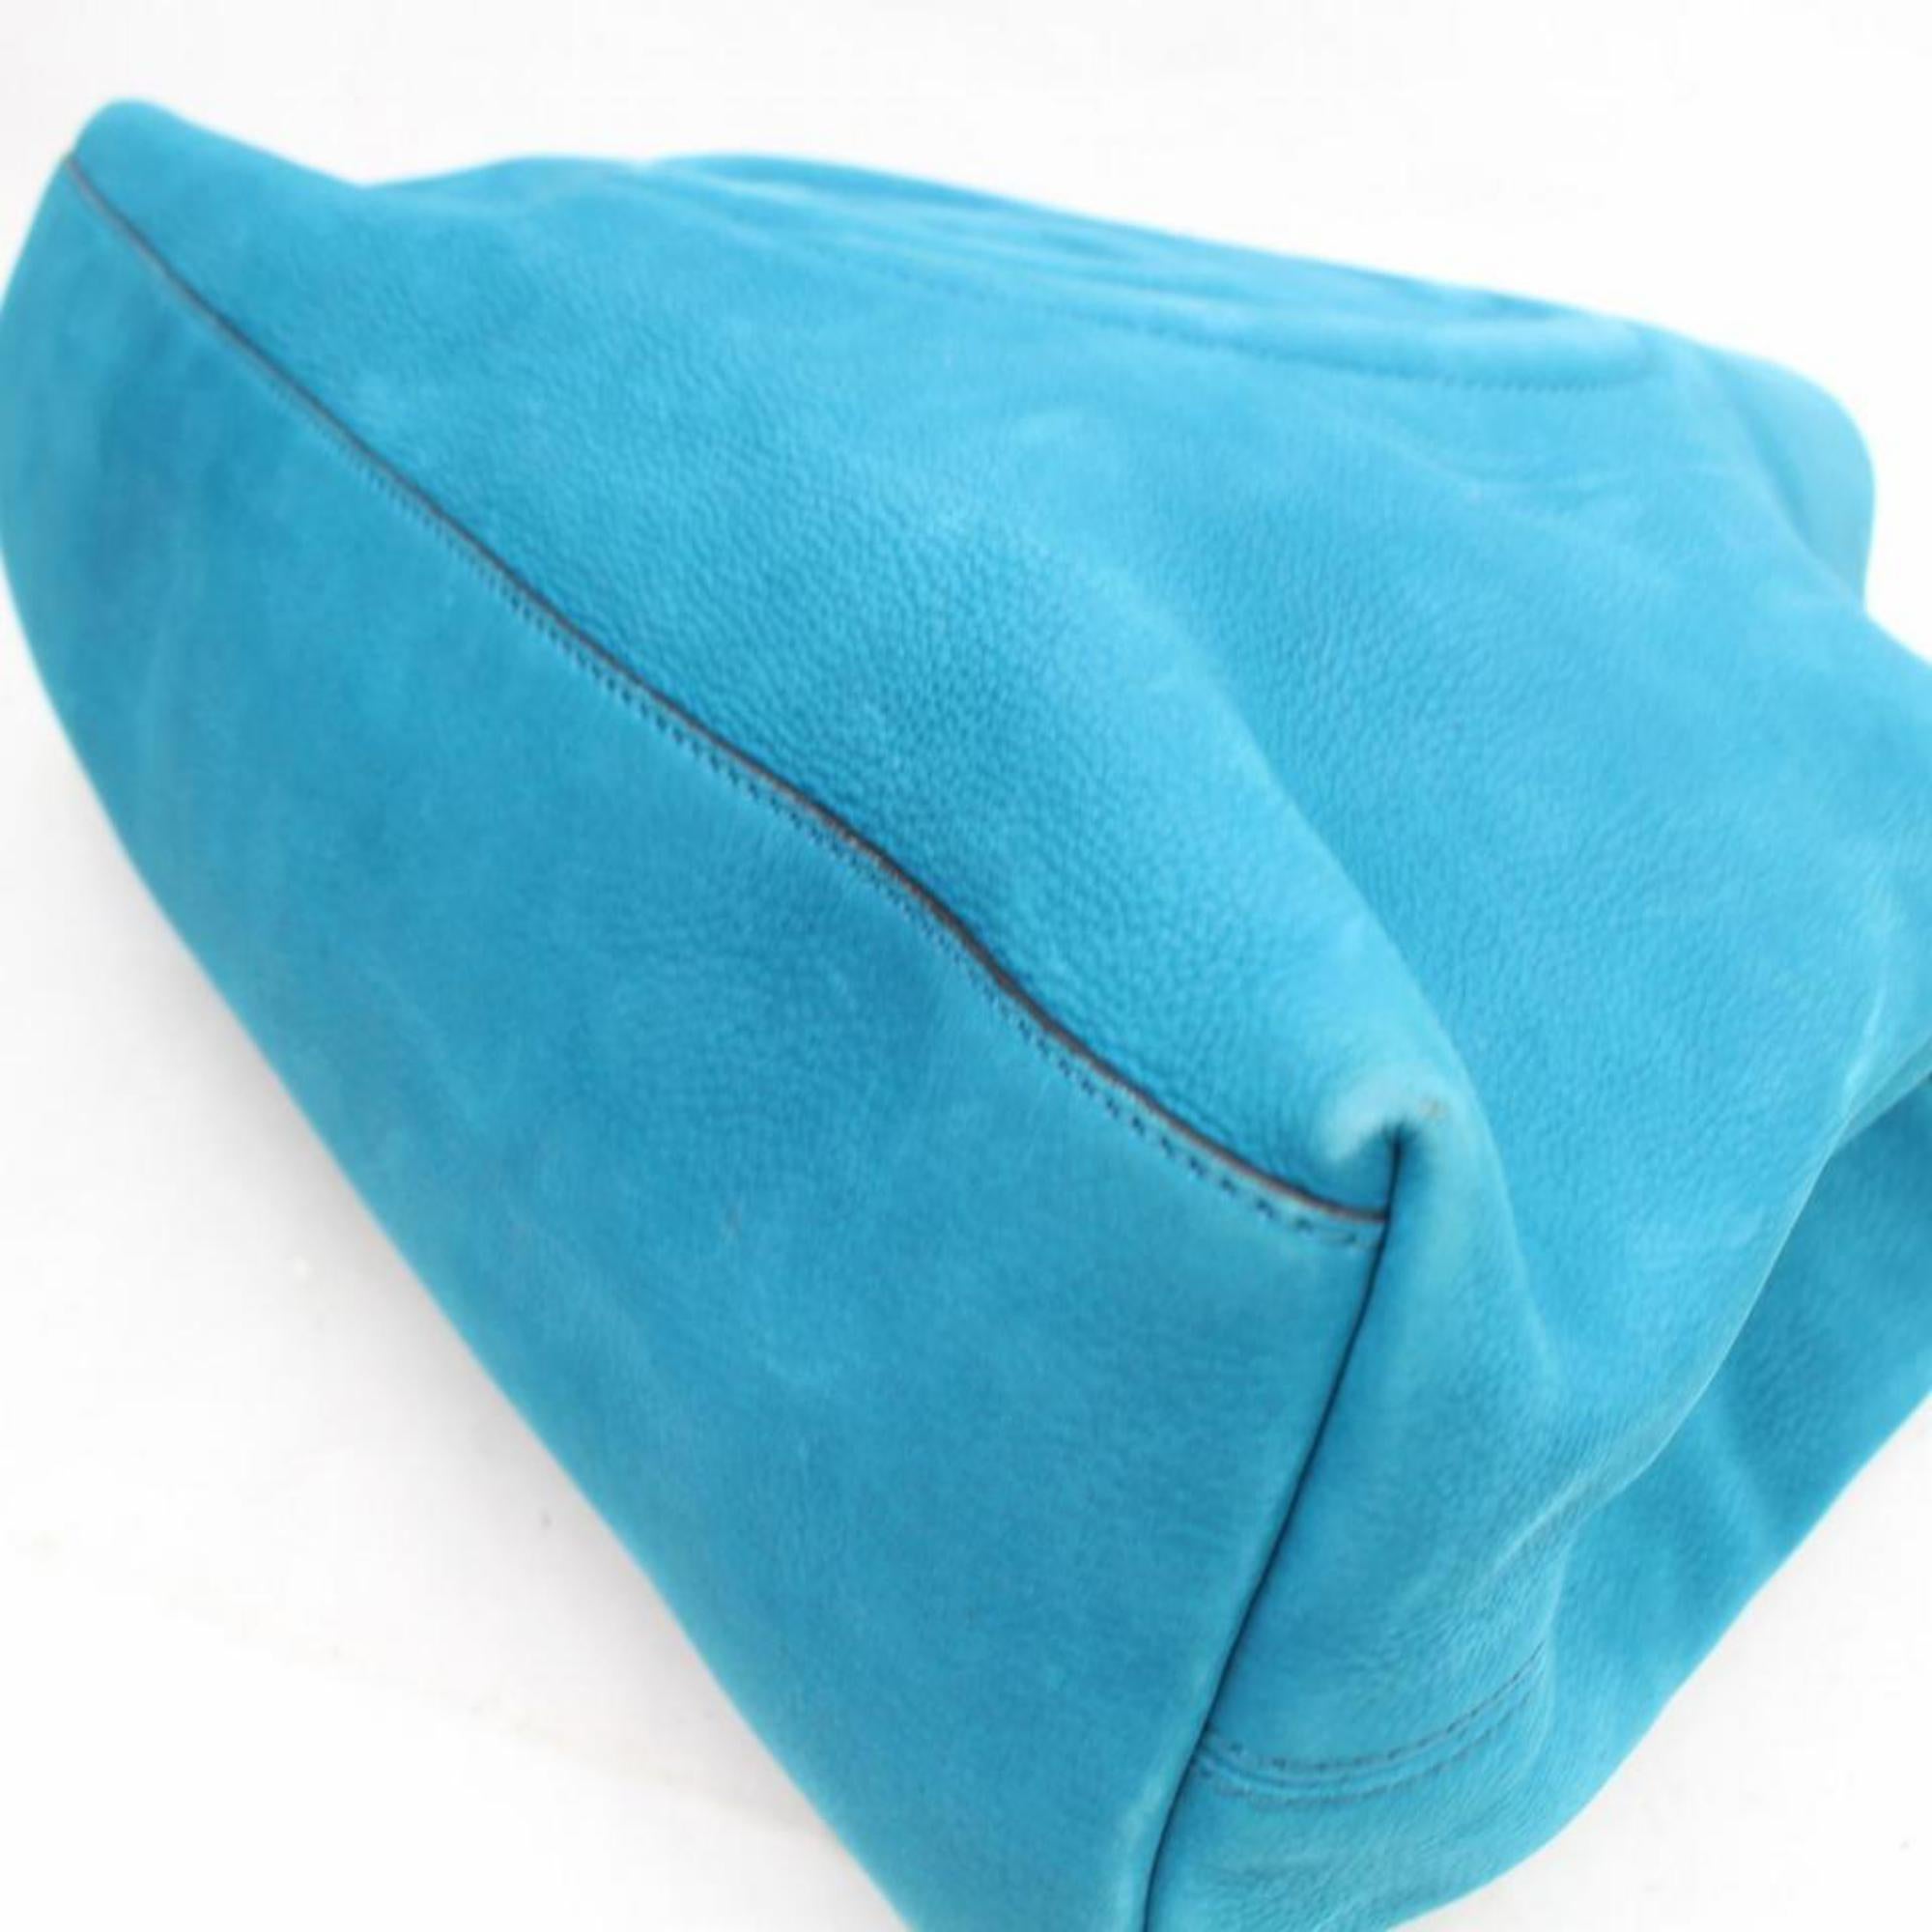 Gucci Soho Fringe Tassel Chain Tote 869786 Blue Nubuck Leather Shoulder Bag For Sale 5